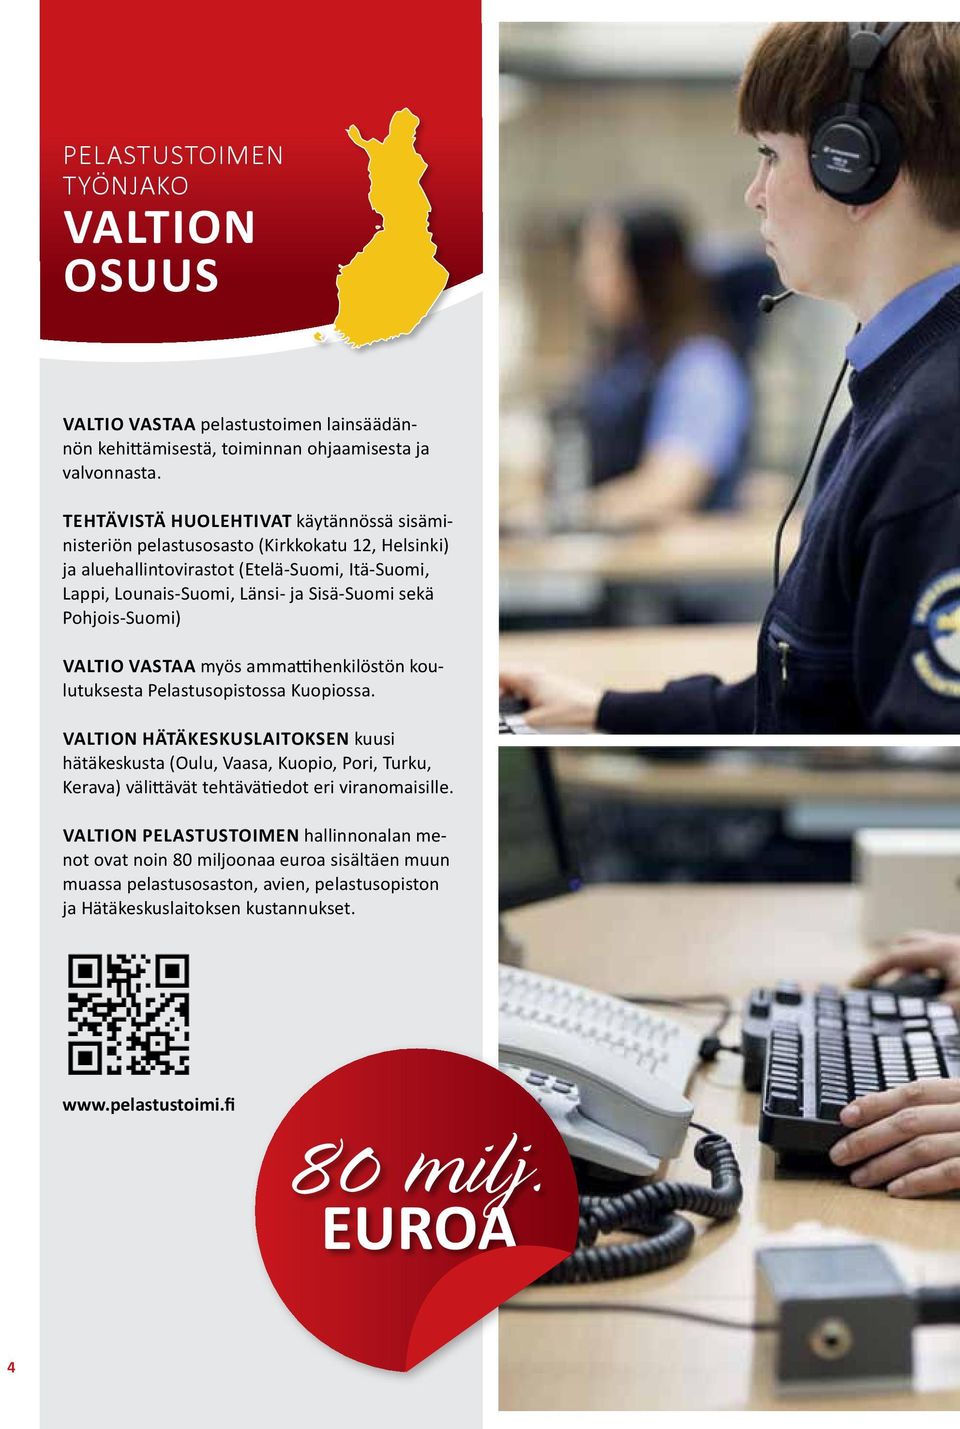 Pohjois-Suomi) Valtio vastaa myös ammattihenkilöstön koulutuksesta Pelastusopistossa Kuopiossa.